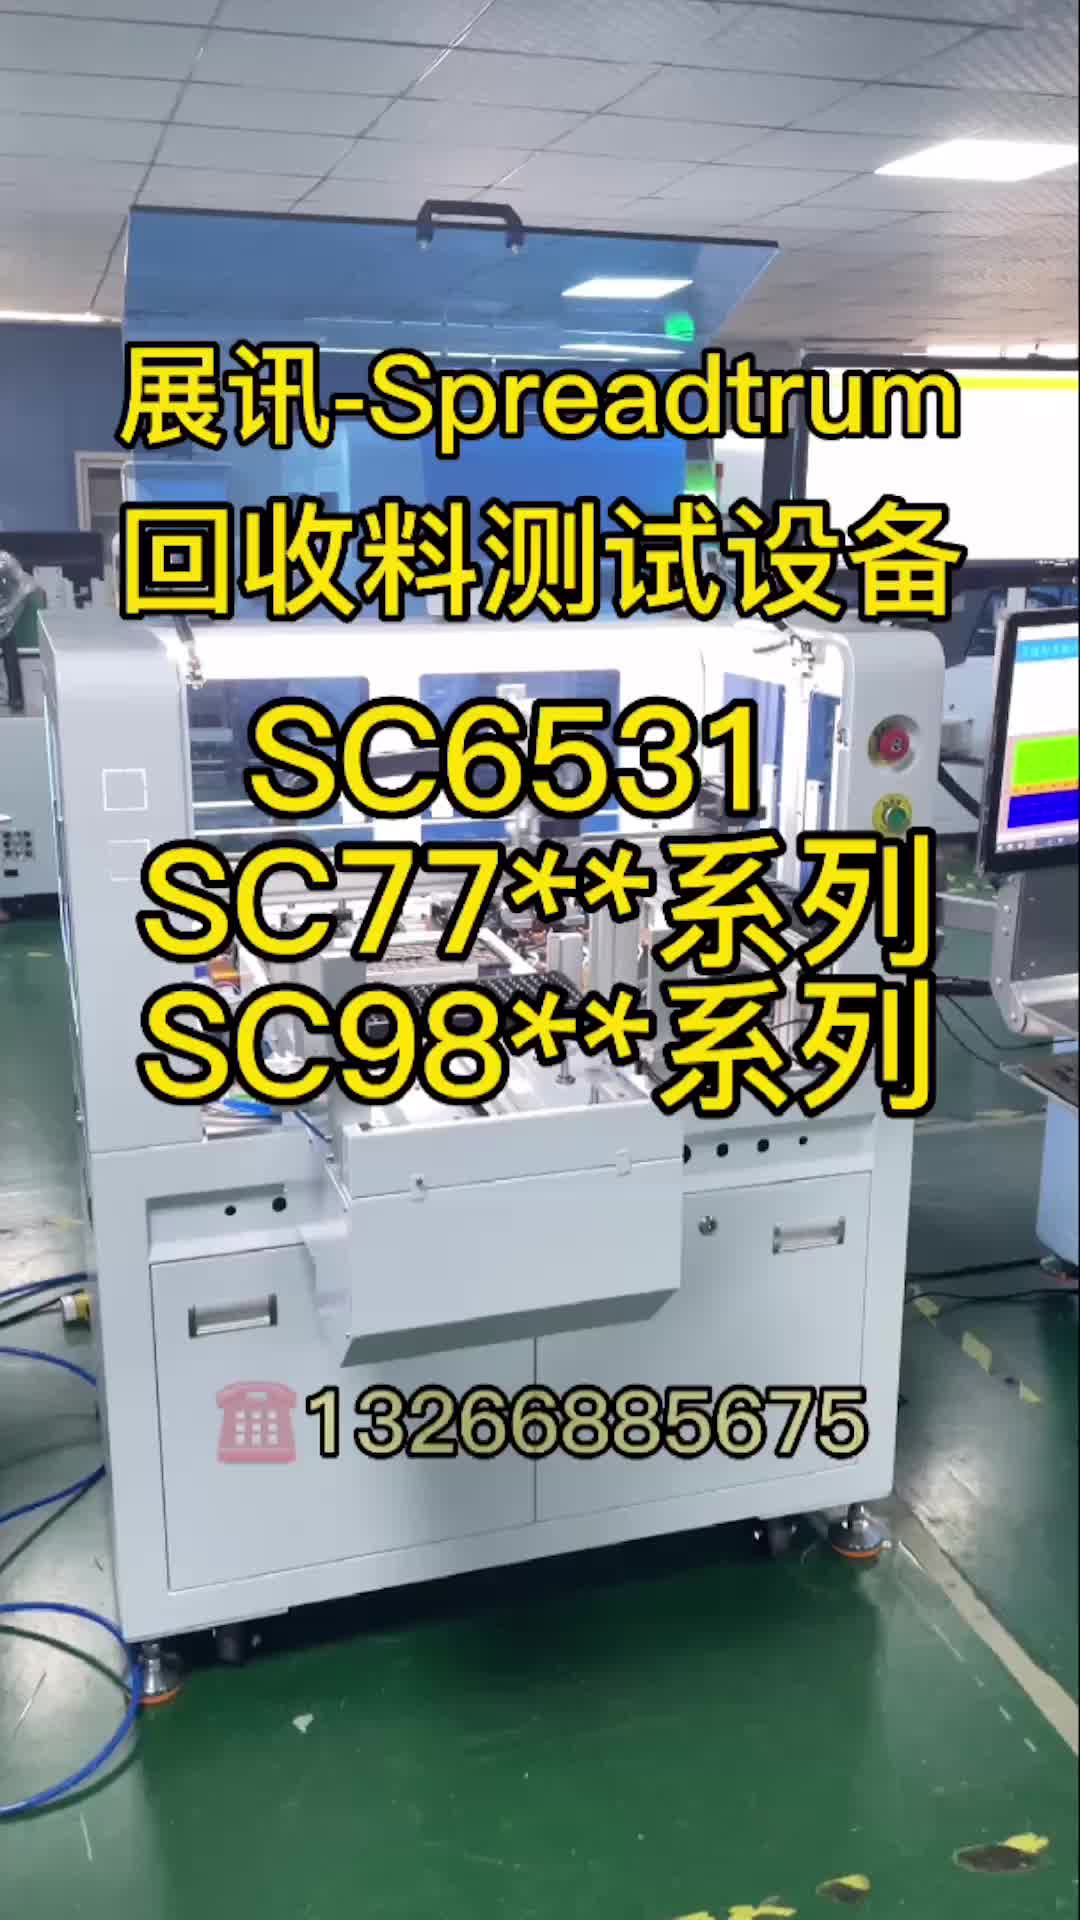 #展讯Spreadtrum 展讯二手芯片测试SC6531、SC77、98 系列等等自动化测试，方案成熟稳定